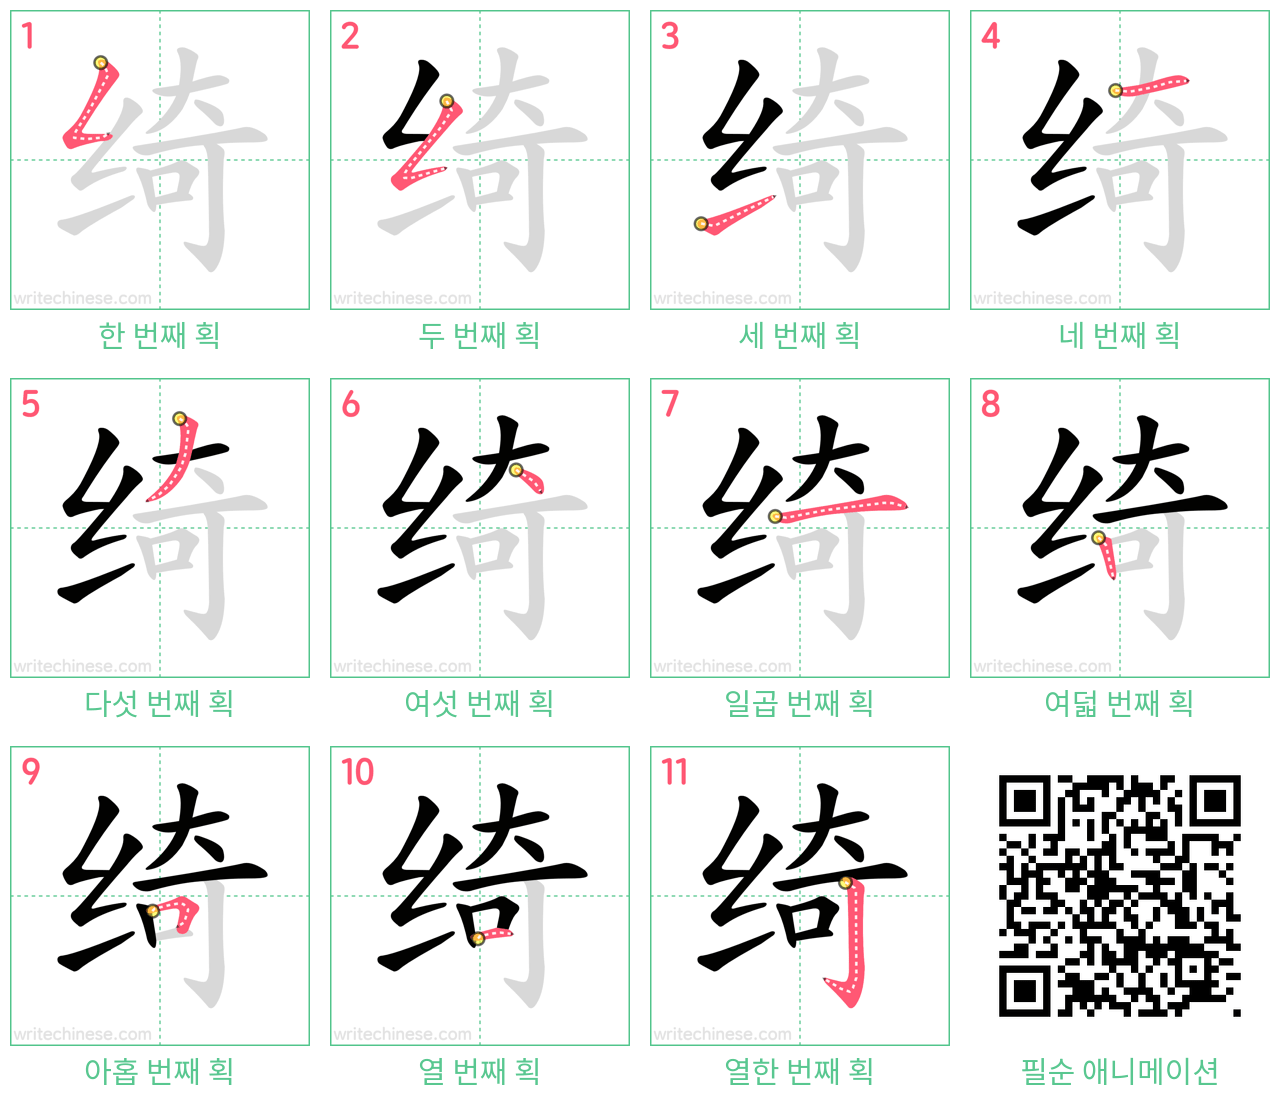 绮 step-by-step stroke order diagrams